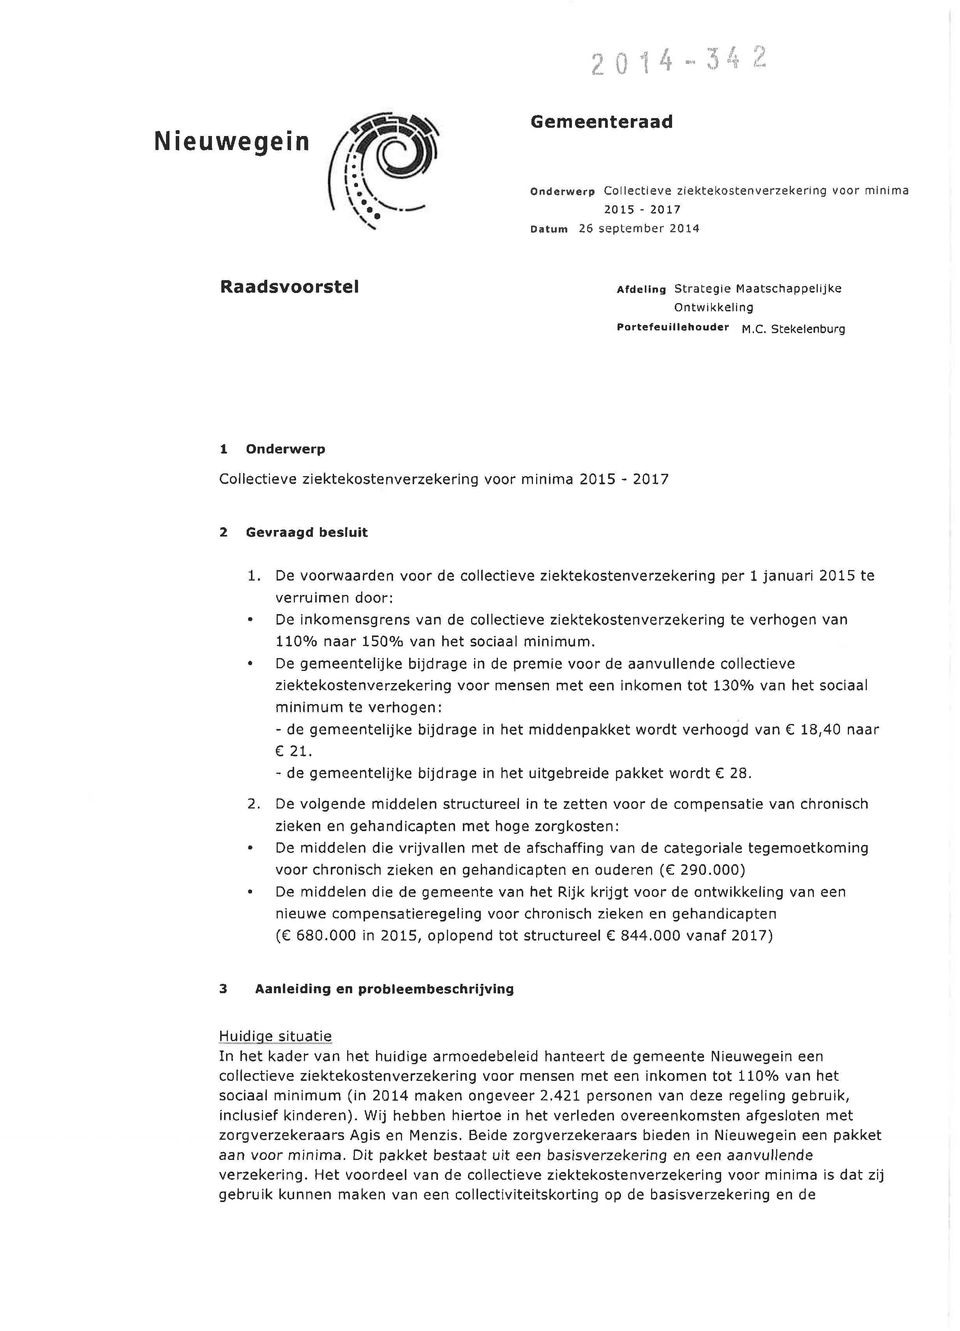 M.C. Stekelenburg 1 Onderwerp Collectieve ziektekostenverzekering voor minima 2015-2017 2 Gevraagd besluit 1.